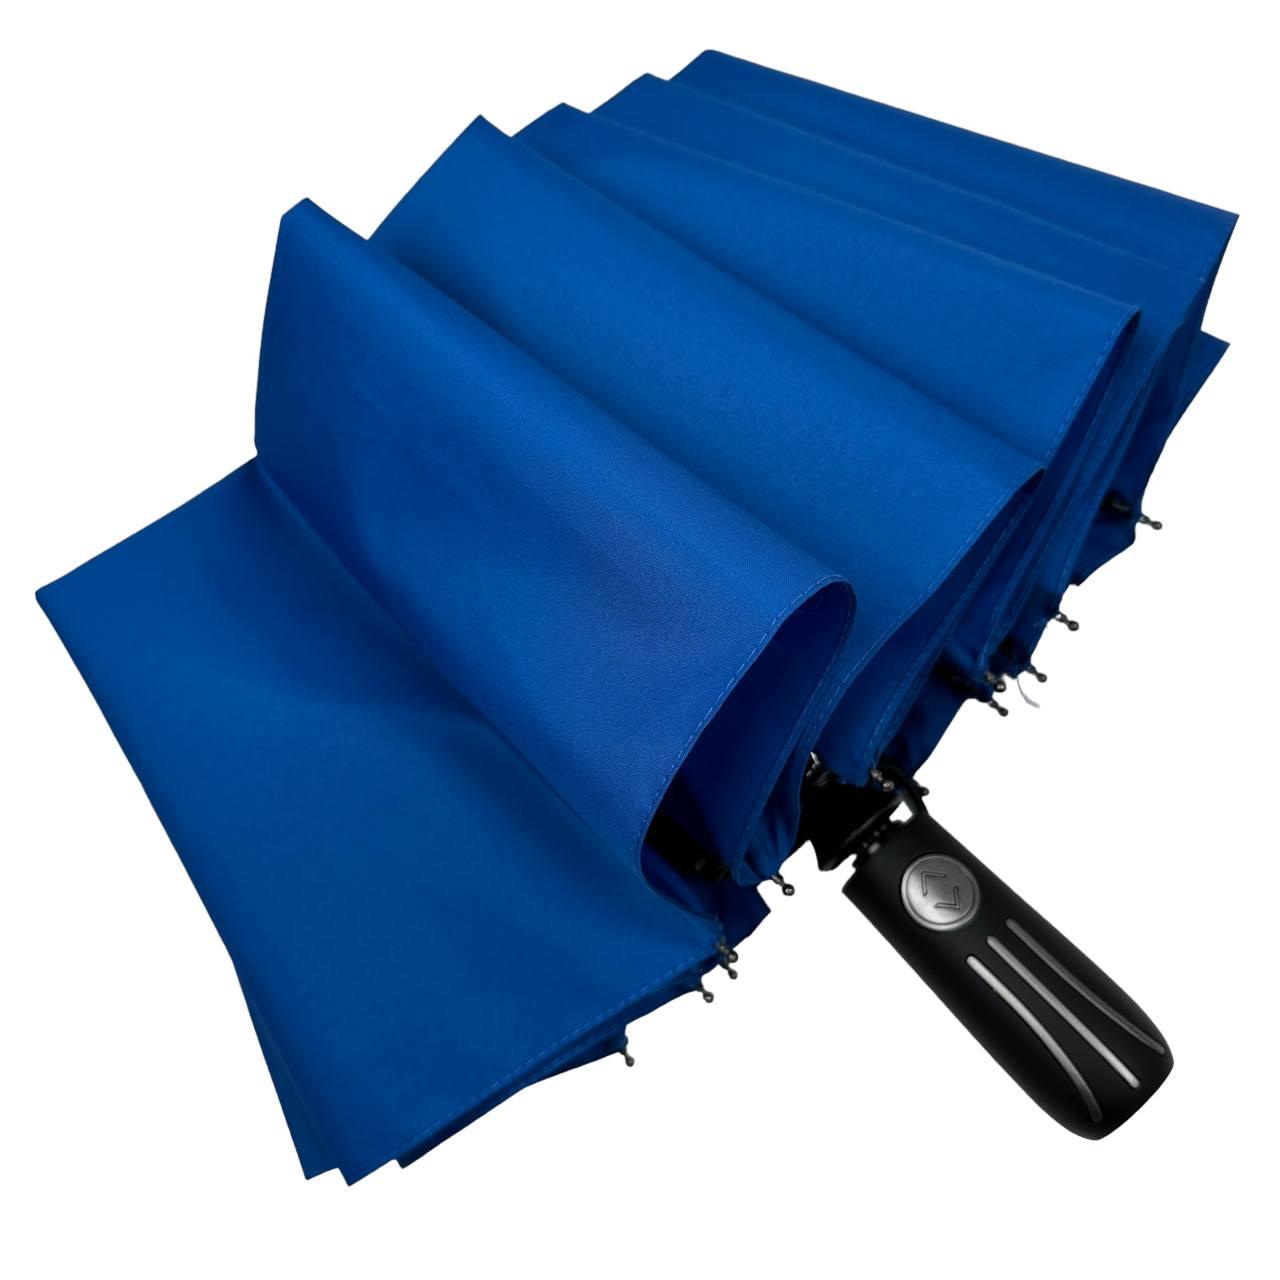 Складной зонтик полный автомат Toprain 105 см синий - фото 4